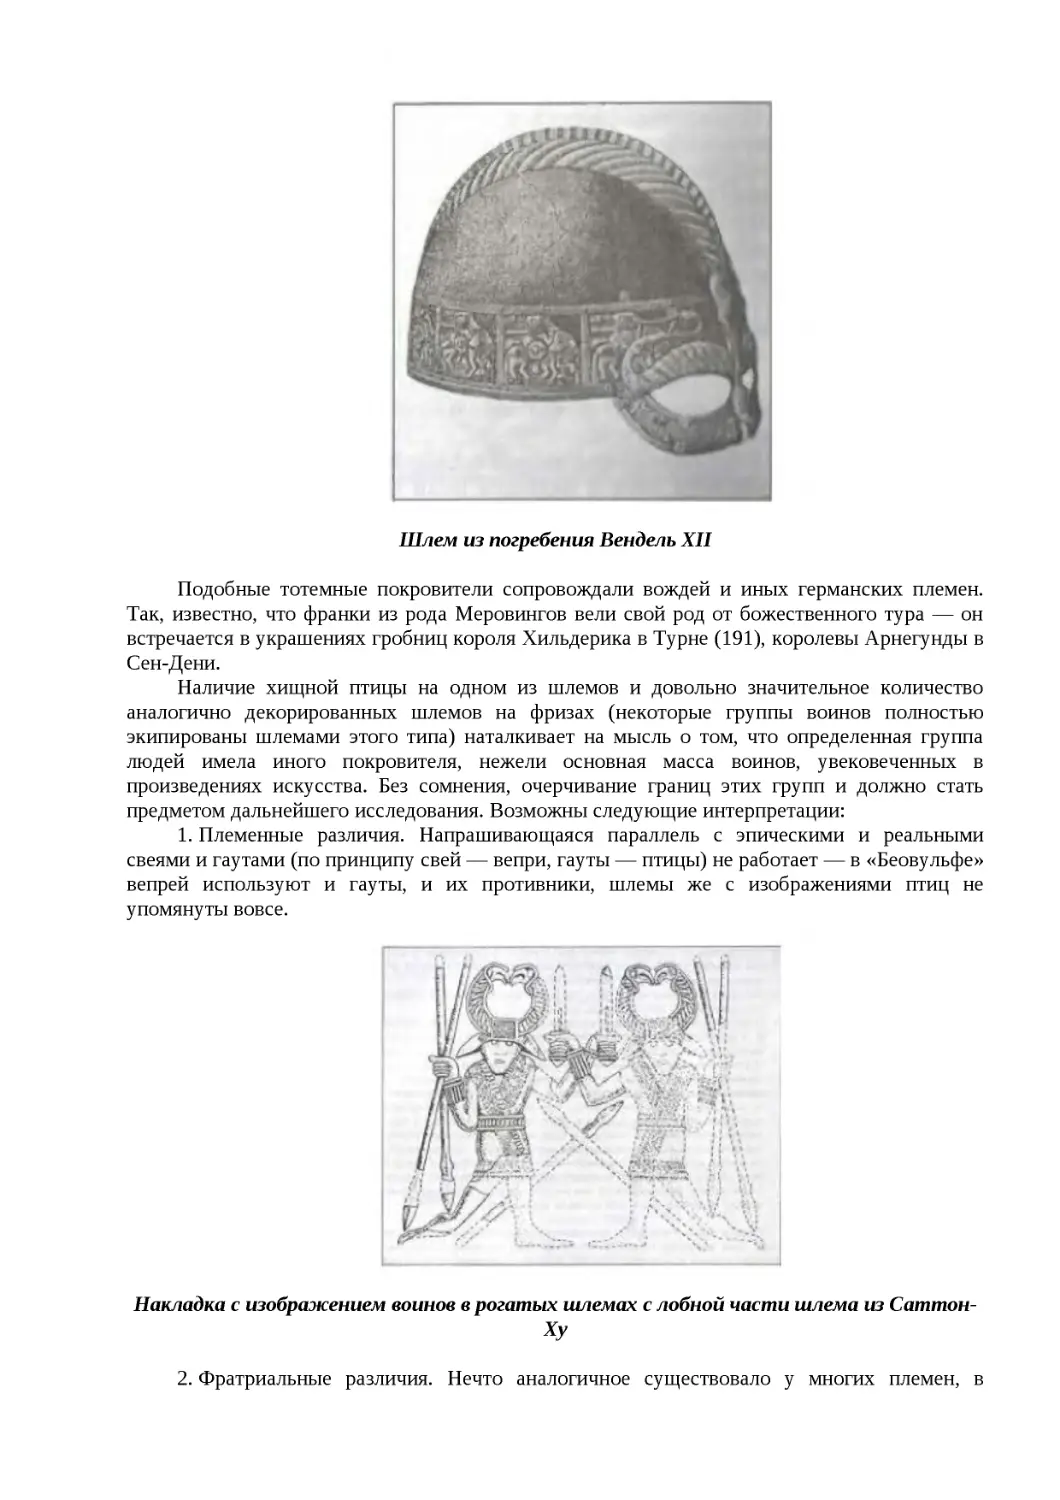 ﻿Ӹлем из погребения Вендель ХI
﻿Накладка с изображением воинов в рогатых шлемах с лобной части шлема из Саттон-Х